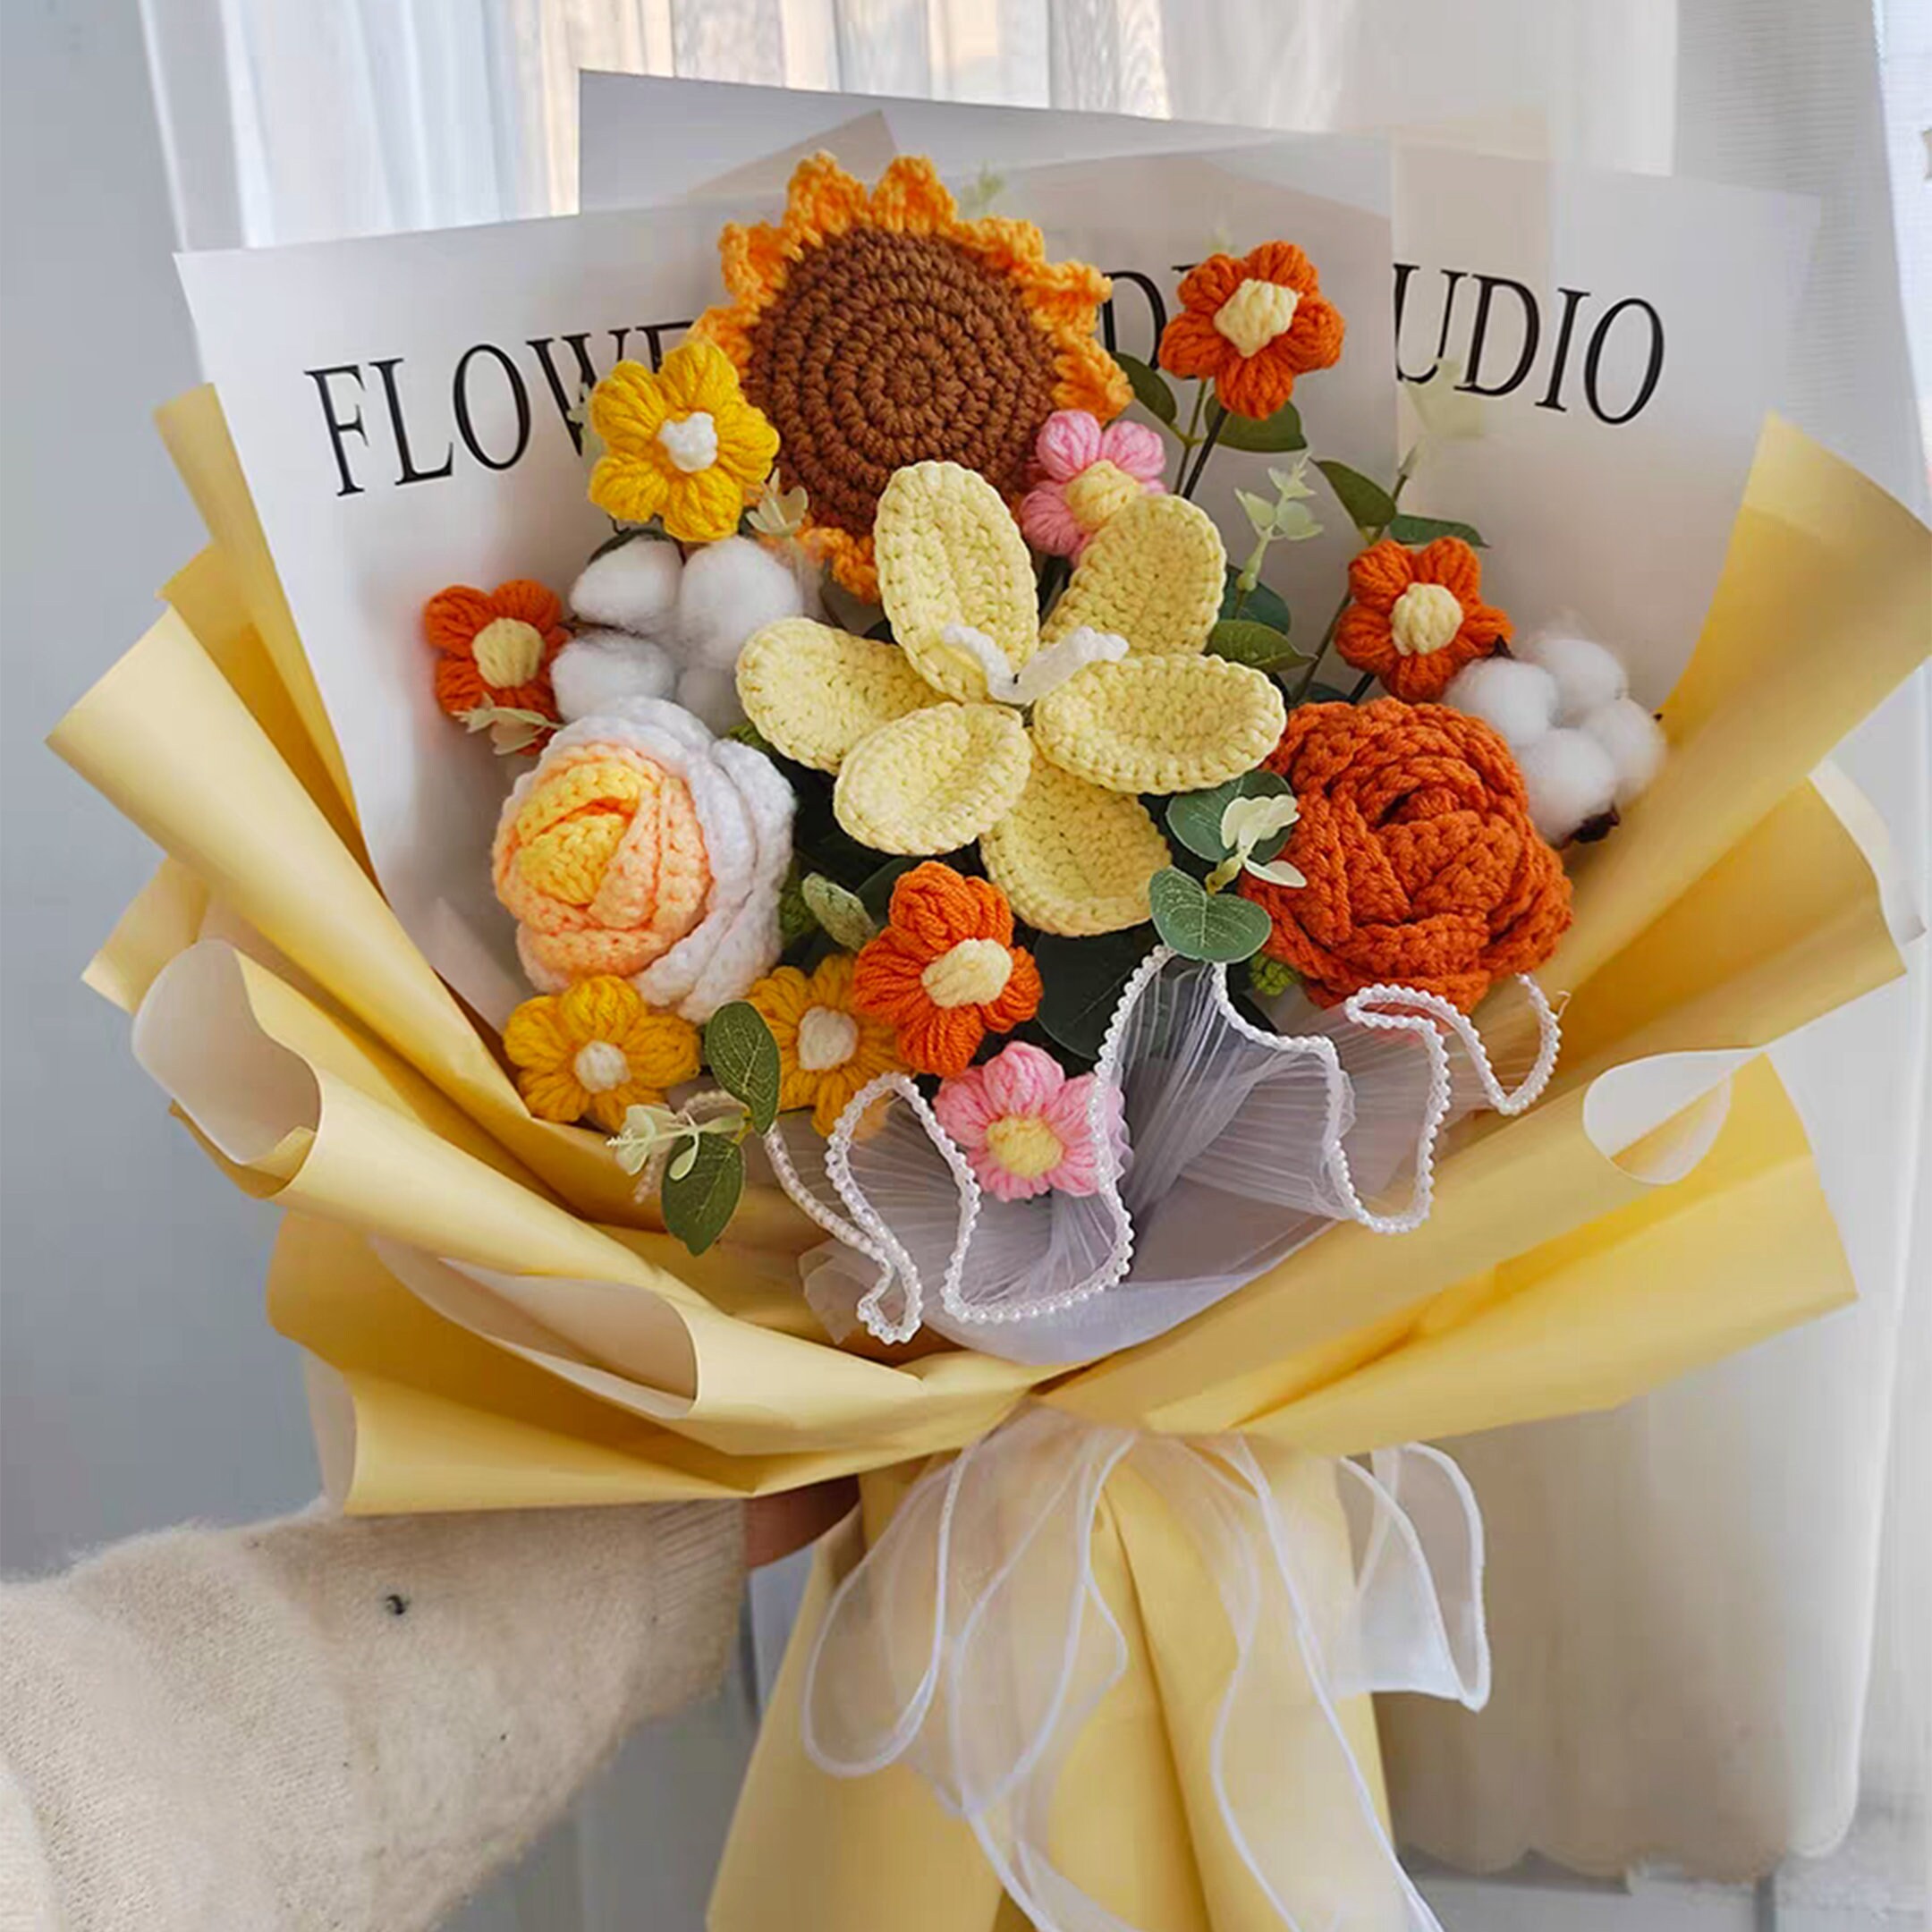 CrochFlower Crochet Flower Bouquet Floral Arrangement Cute Gift for He